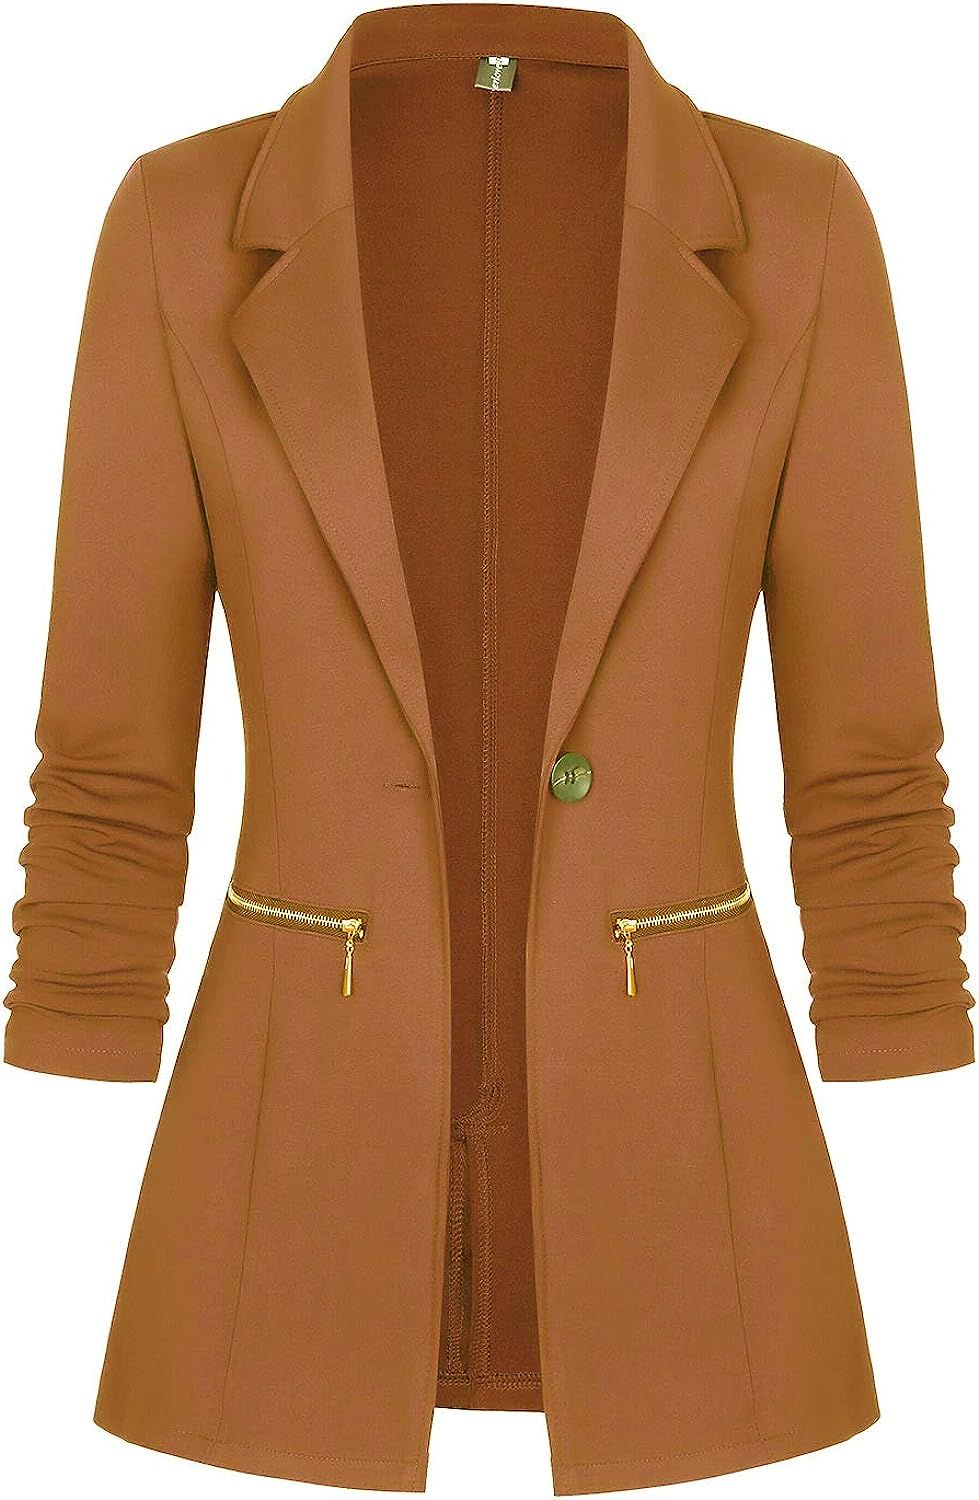 Genhoo Women's Long Sleeve Blazer Open Front Cardigan Jacket Work Office Blazer with Zipper Pocke... | Amazon (US)